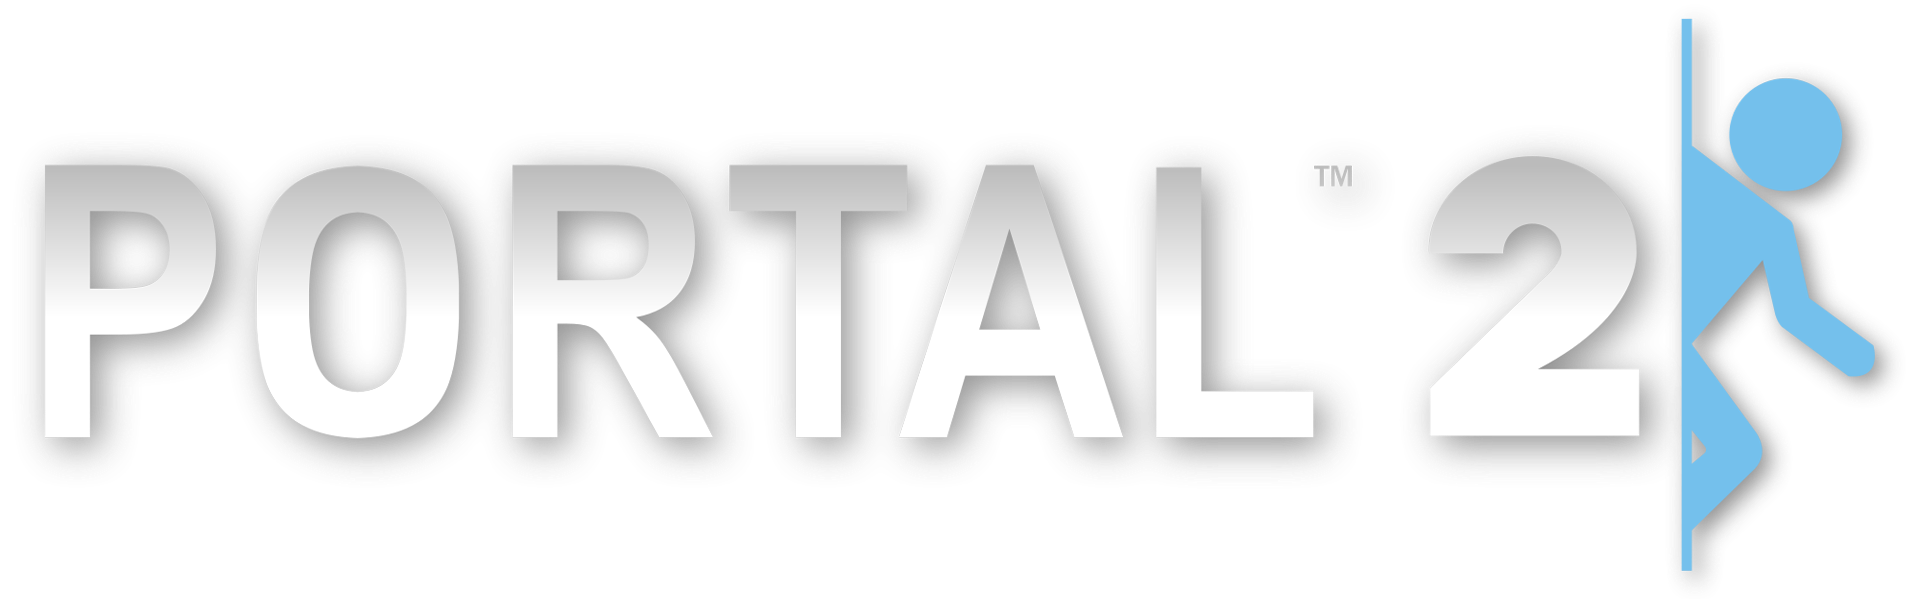 Portal 2 not torrent фото 70